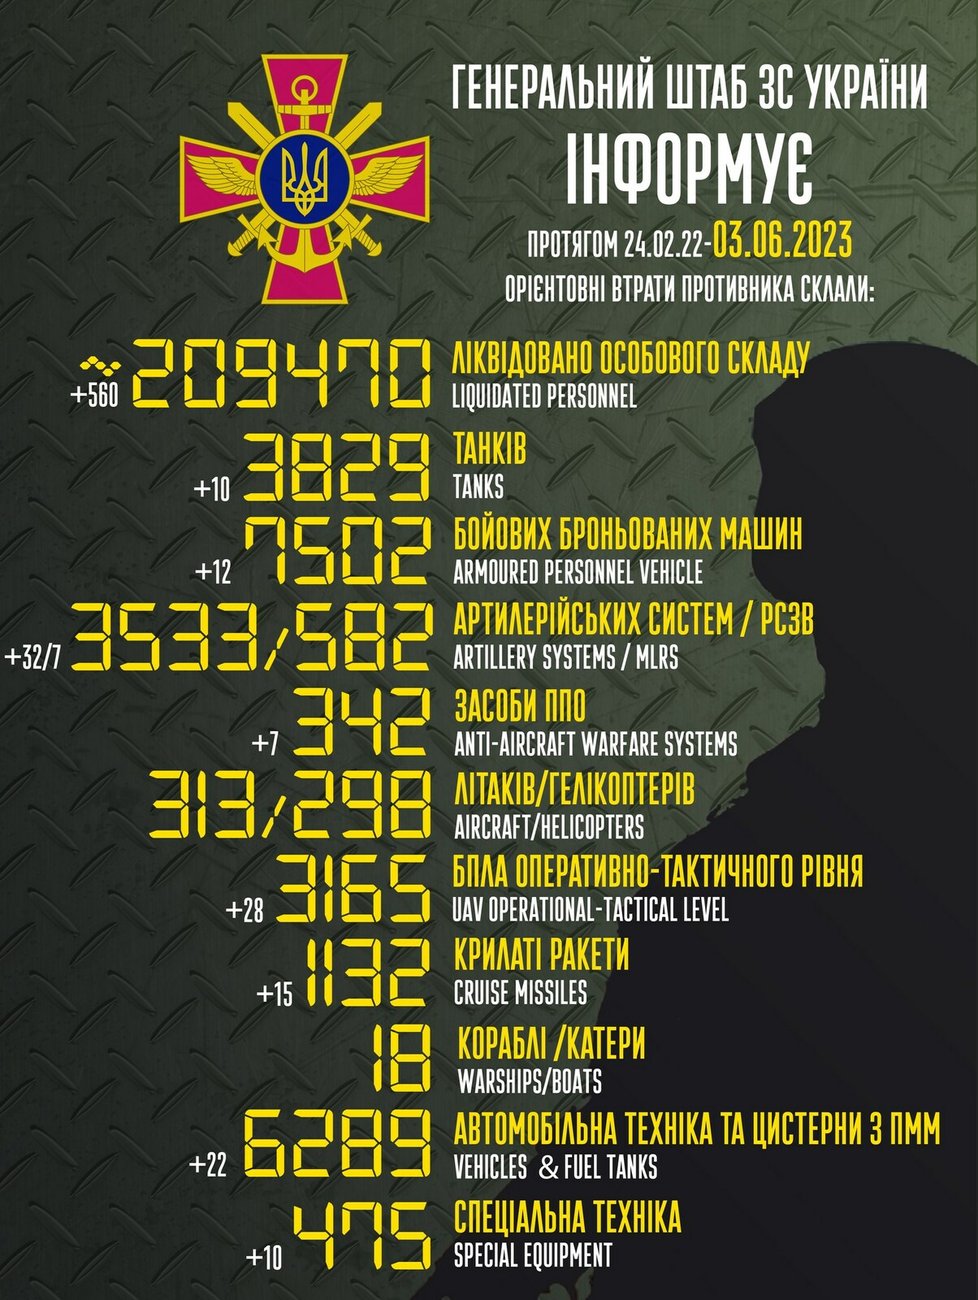 Ruské ztráty k 3. 6. podle generálního štábu ukrajinské armády.